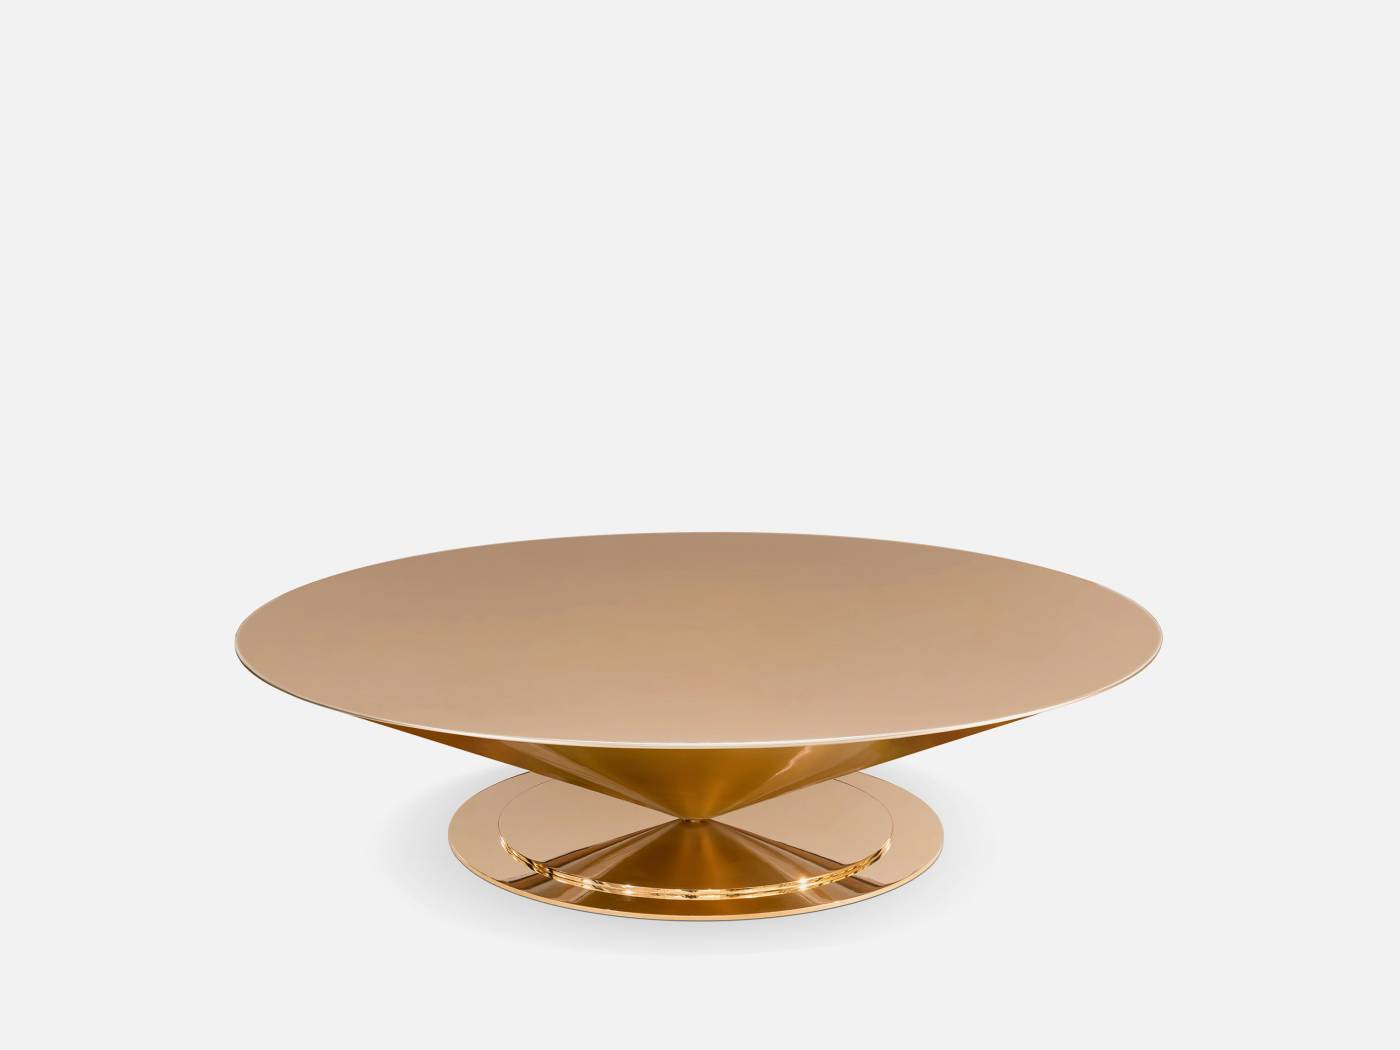 ART. 2316 – C.G. Capelletti Italian Luxury Classic Small tables. Made in Italy classic interior design